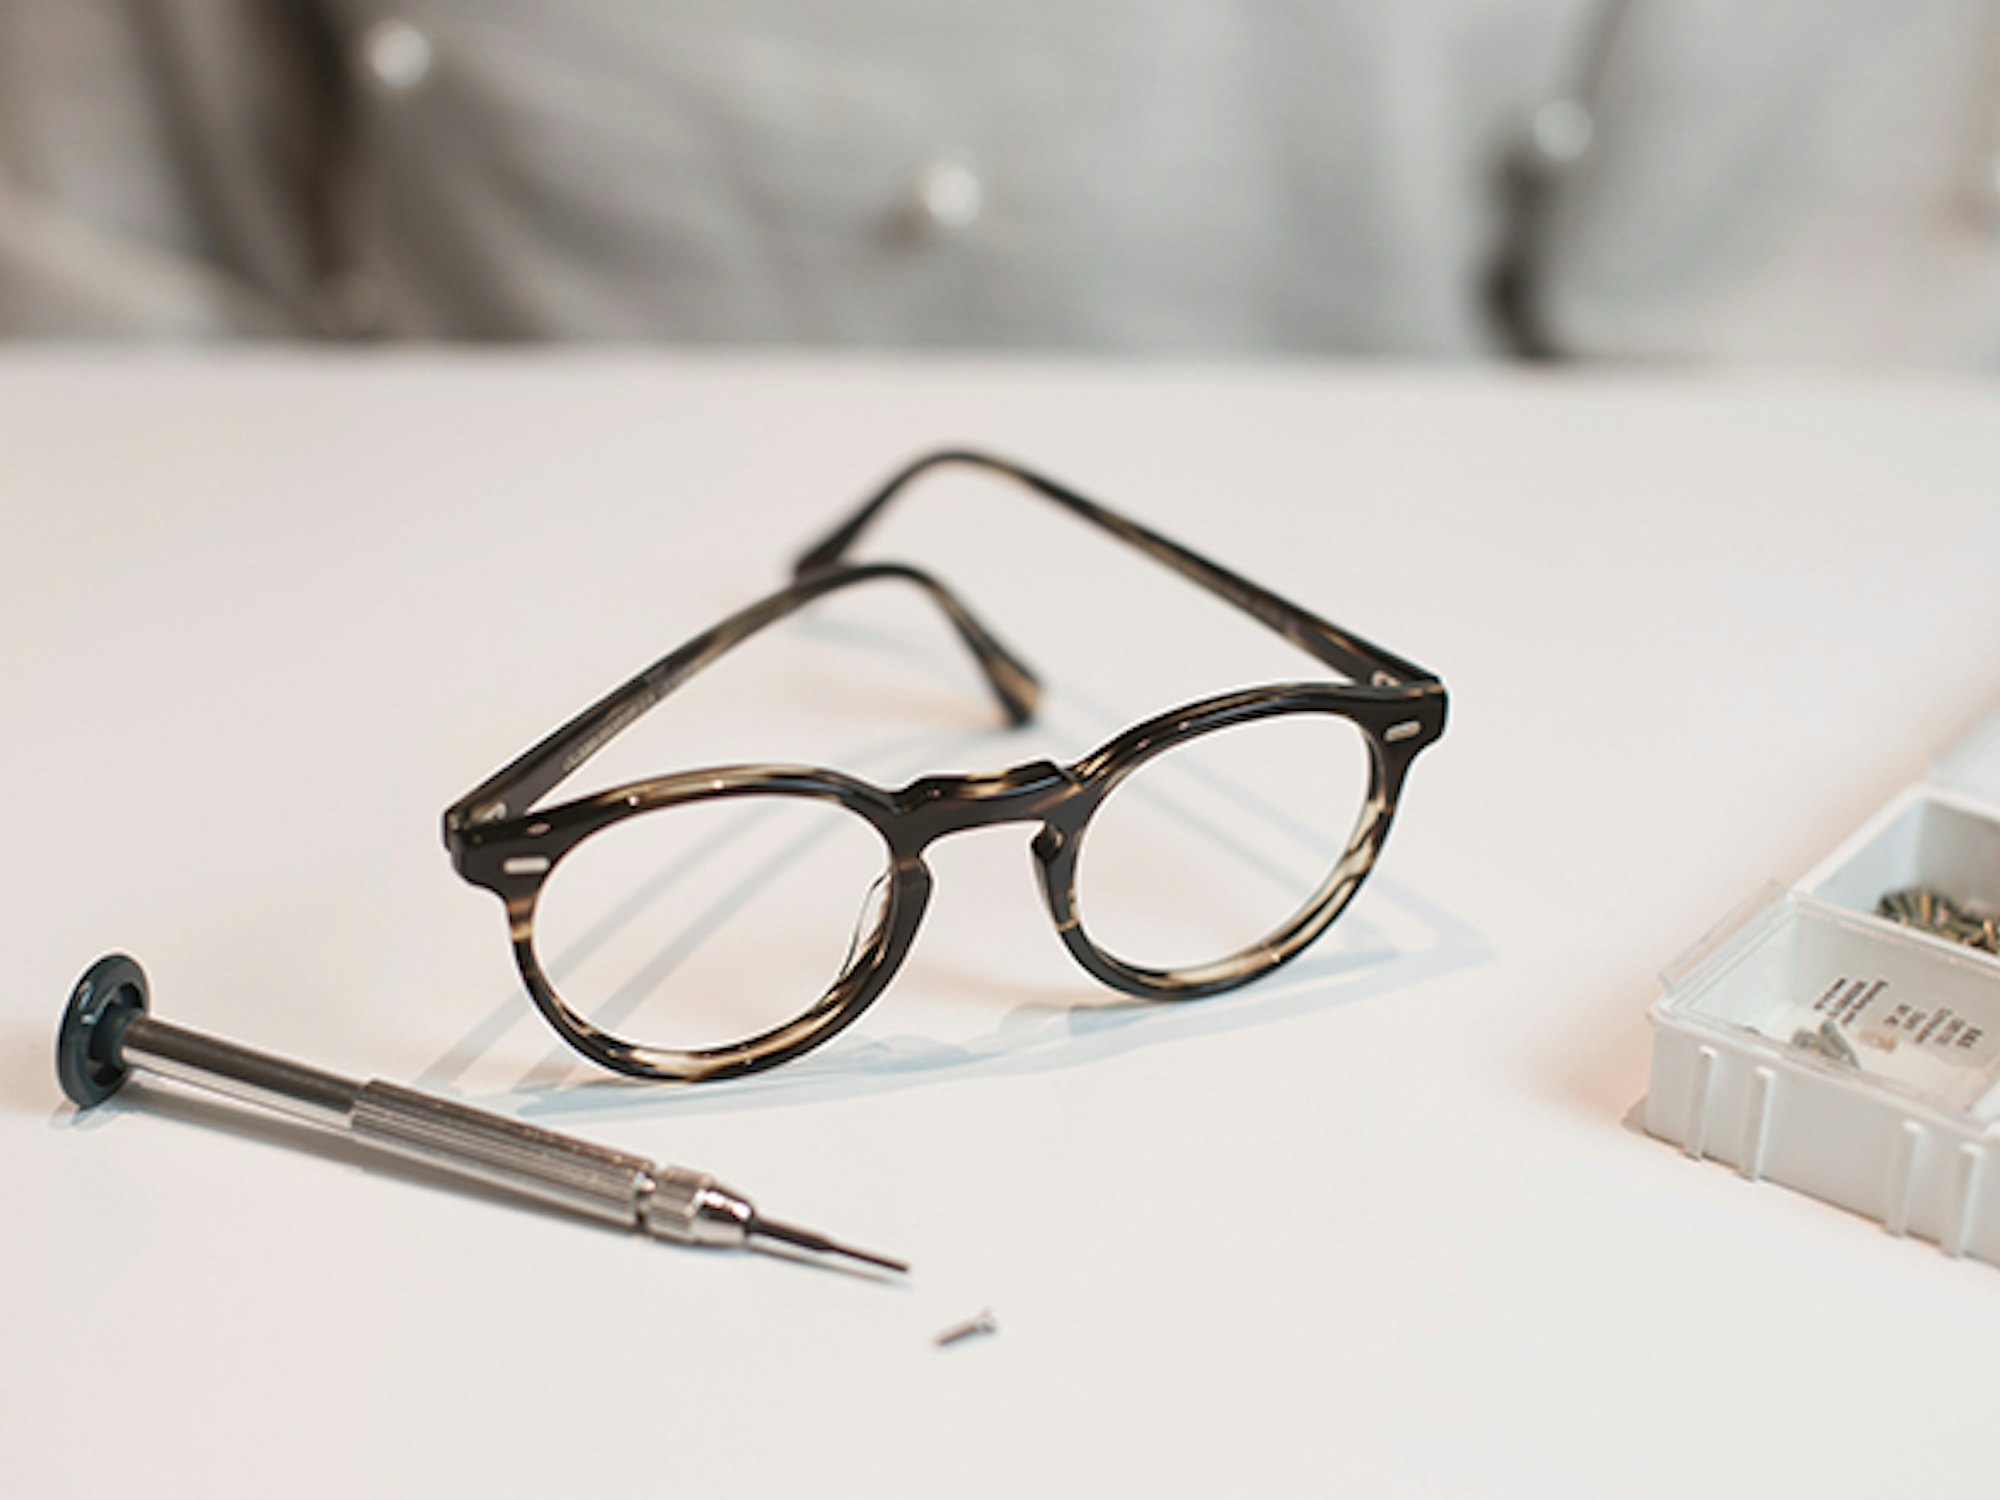 Bilde av en brille og et skrujern for å tilpasse og reparere brillen